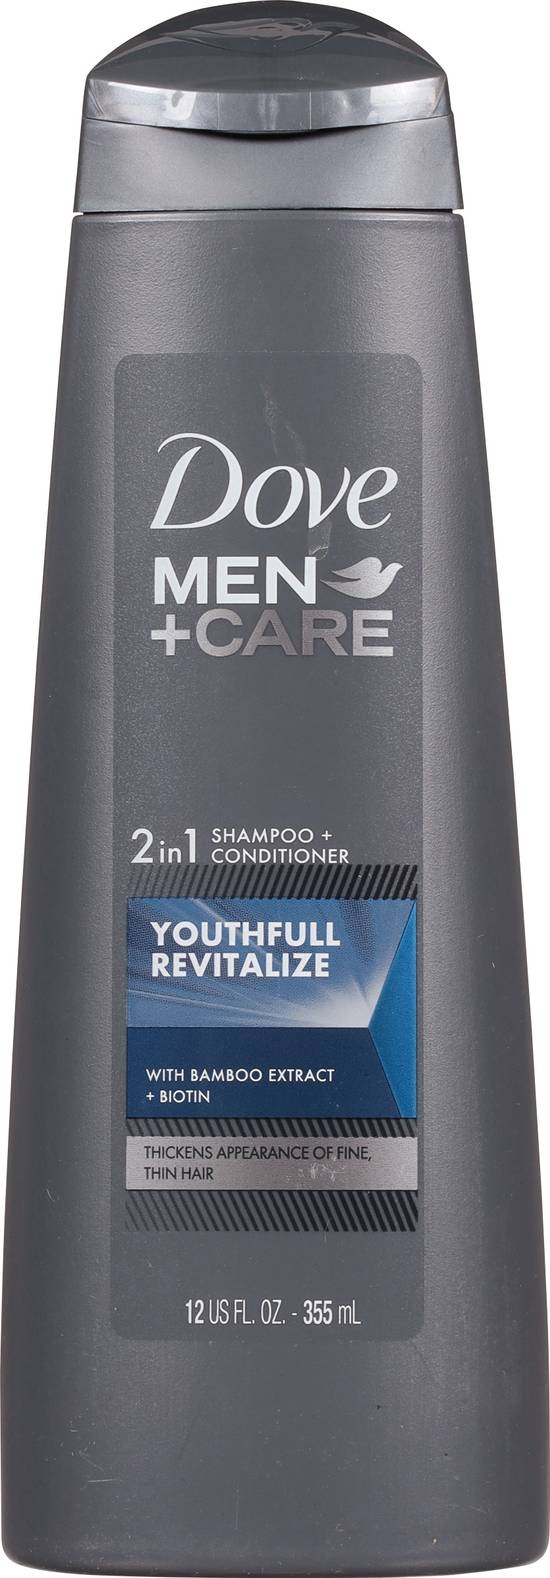 Dove Men+Care 2 in 1 Shampoo + Conditioner